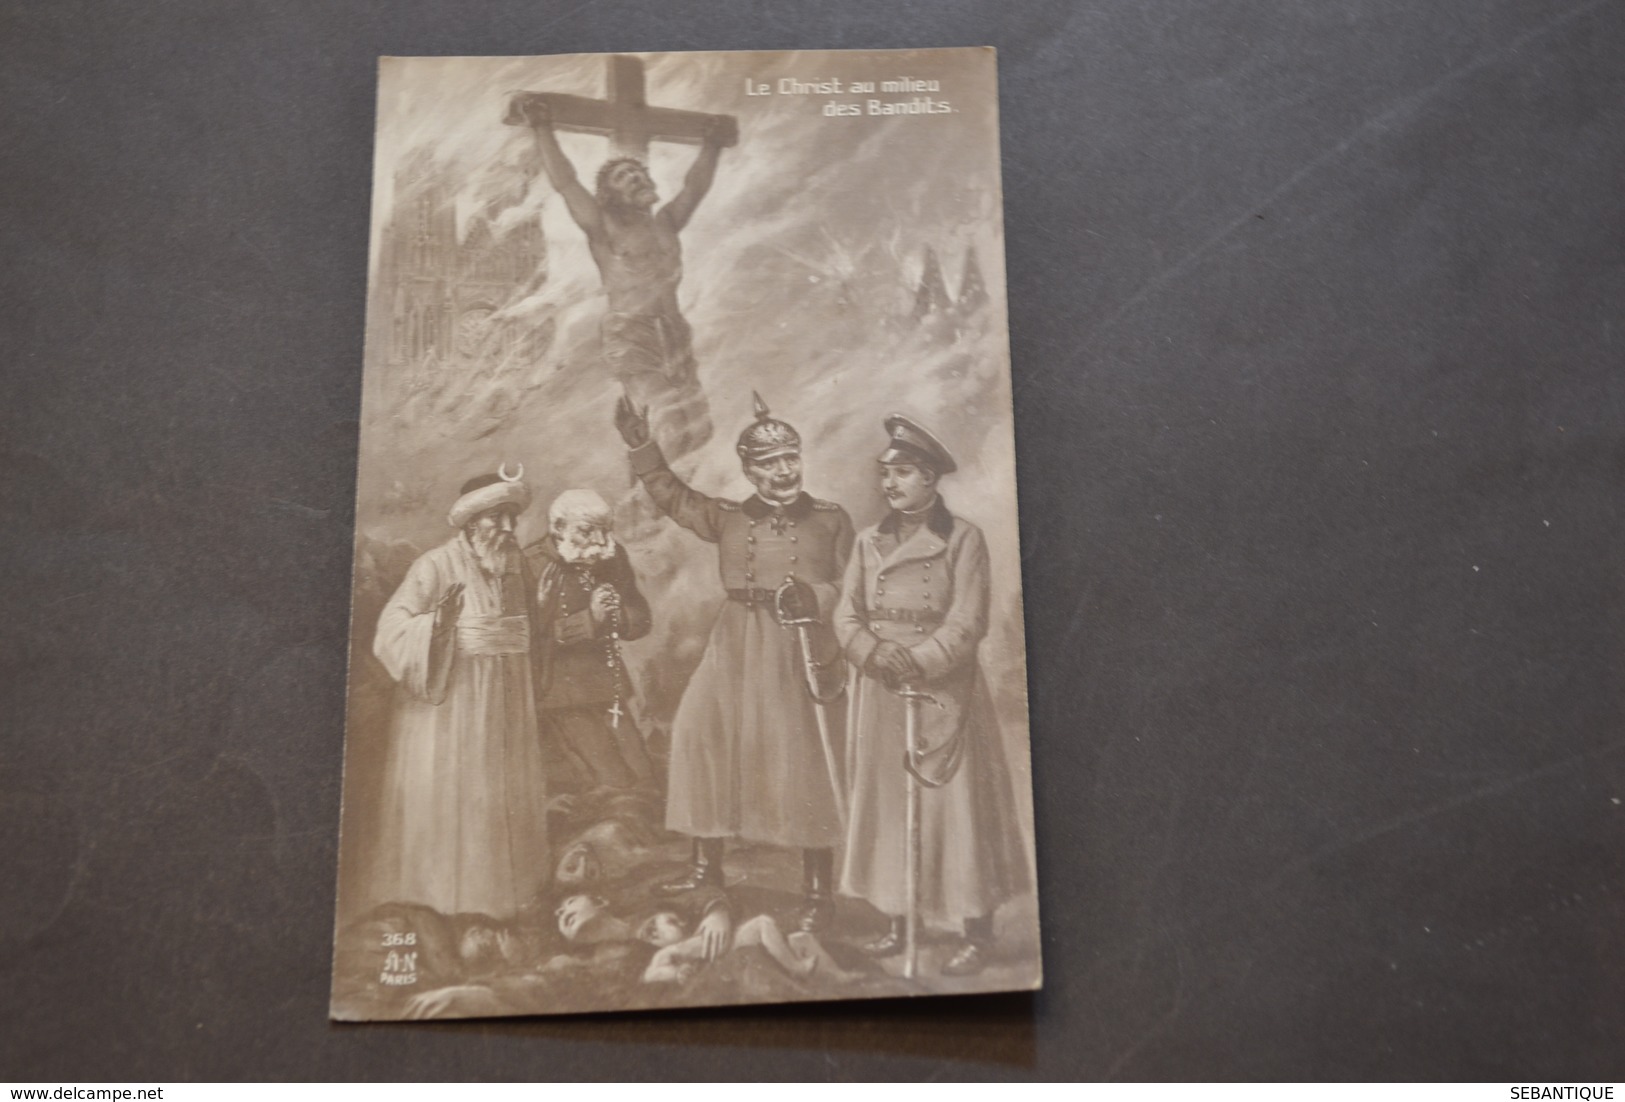 Carte Postale 1910 Le Christ Au Milieu Des Bandits - Heimat